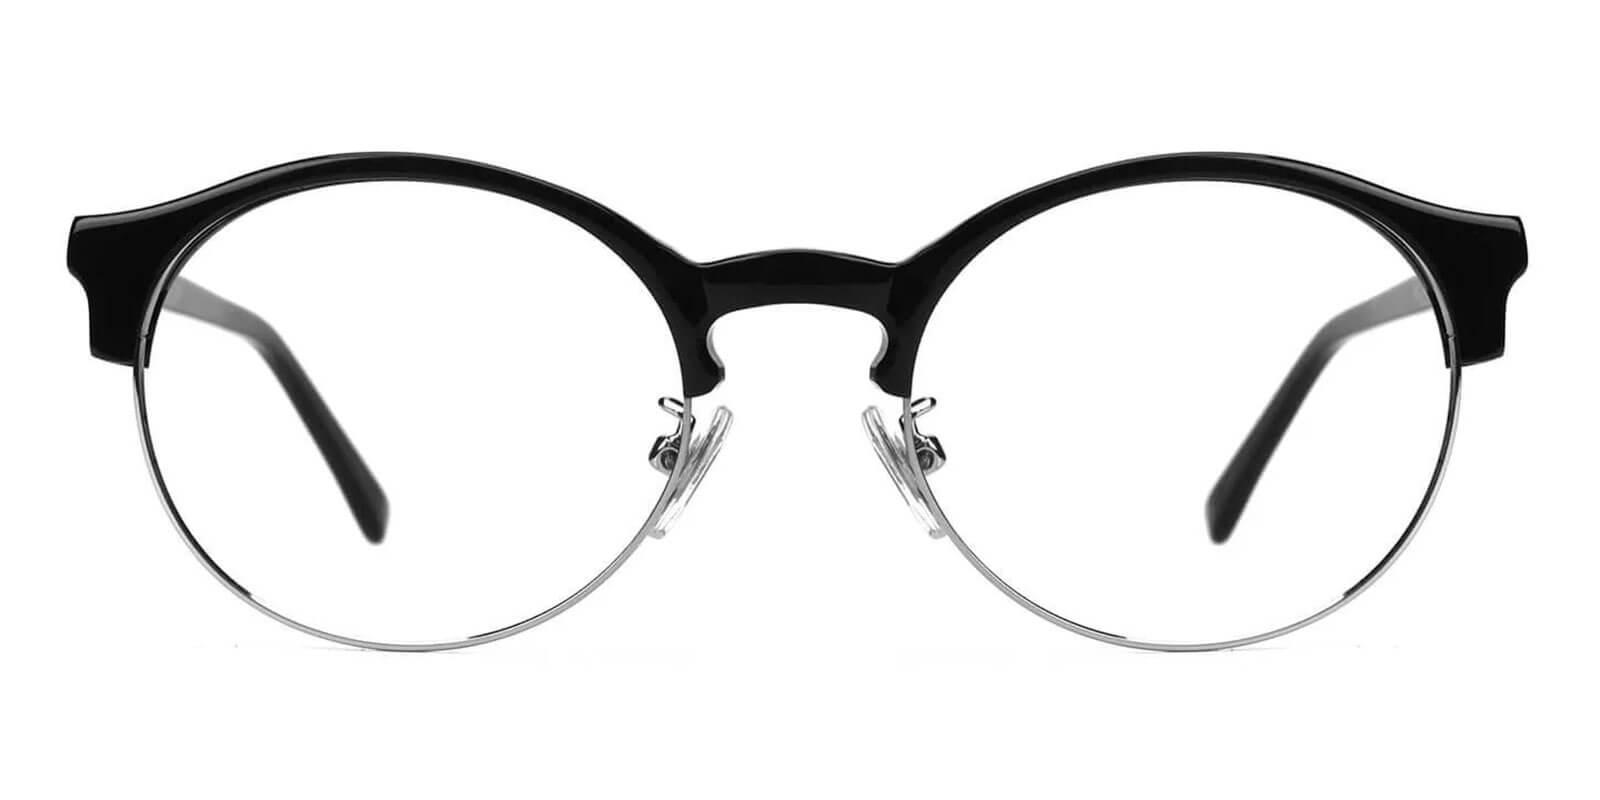 Zenoria Black Combination Eyeglasses , NosePads Frames from ABBE Glasses